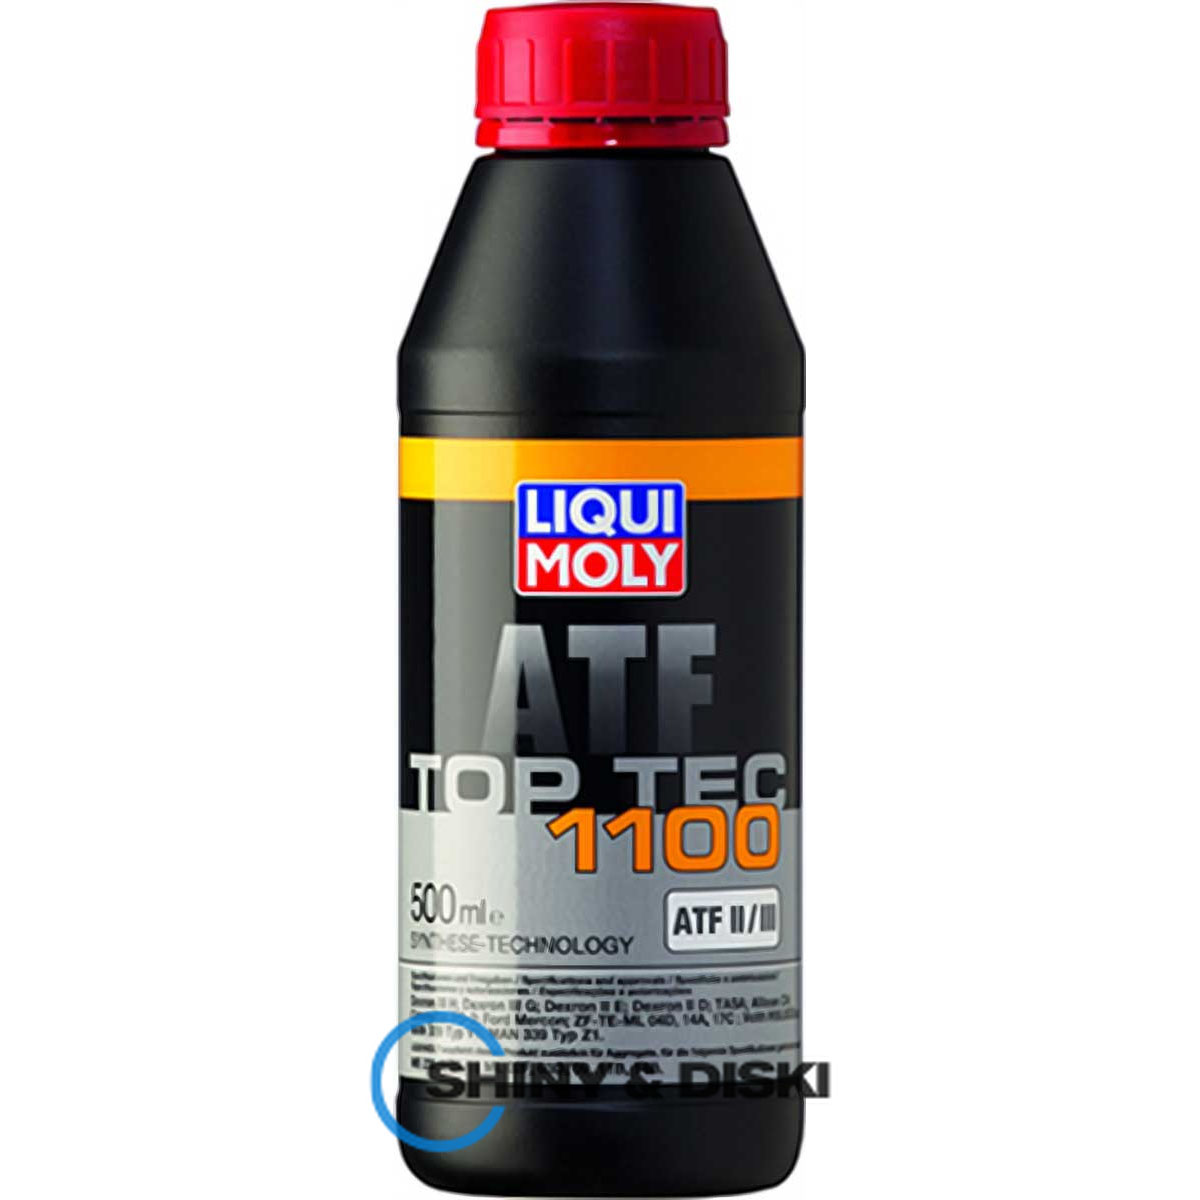 liqui moly top tec atf 1100 (0.5л)